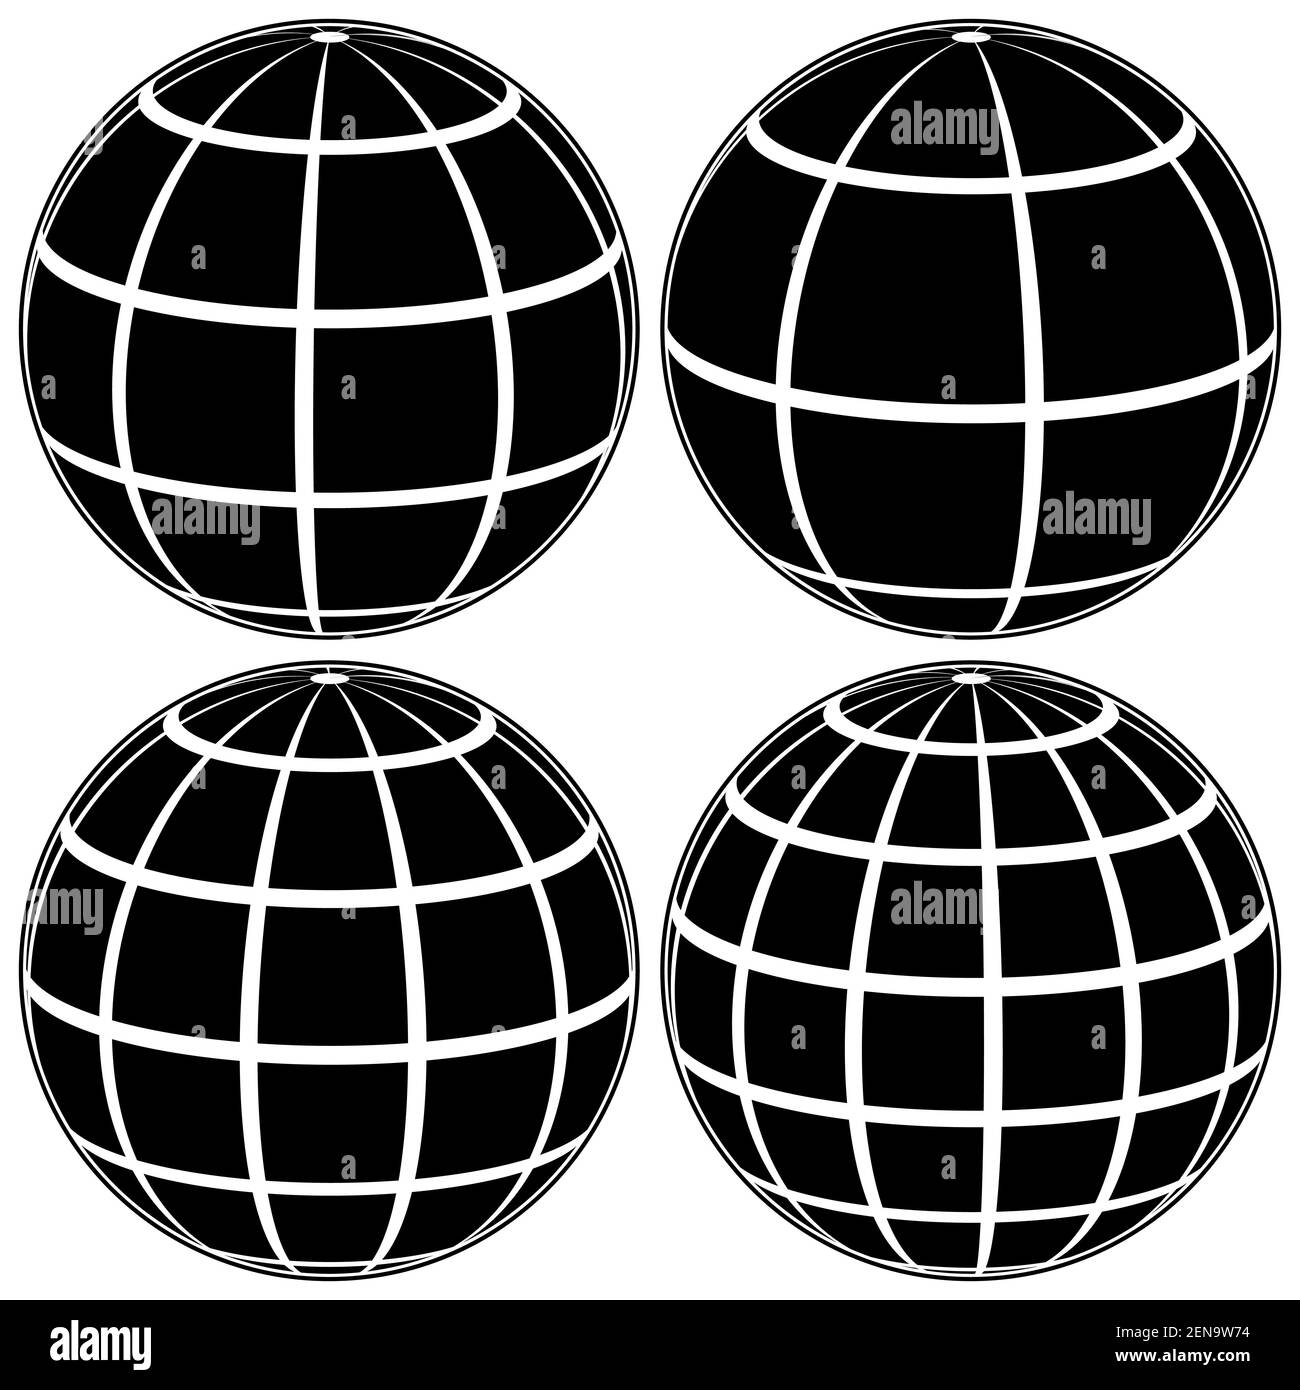 Establecer el globo negro modelo 3D de la Tierra o del planeta, modelo de la esfera celestial con cuadrícula de coordenadas, campo vectorial con rayas y líneas Ilustración del Vector